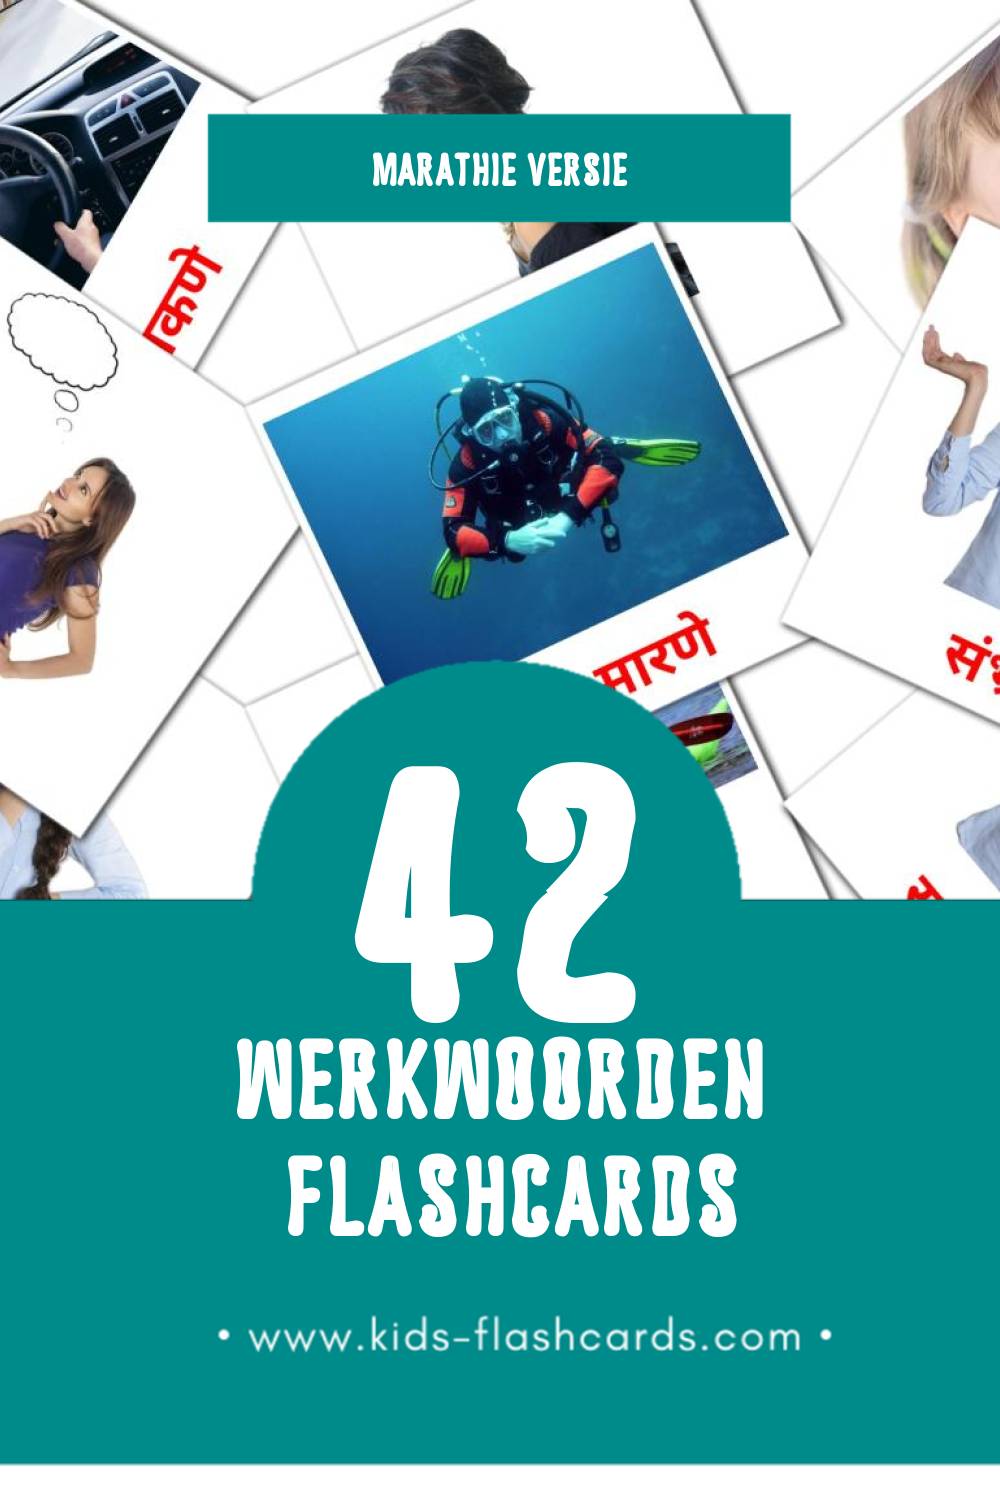 Visuele क्रियापद Flashcards voor Kleuters (42 kaarten in het Marathi)